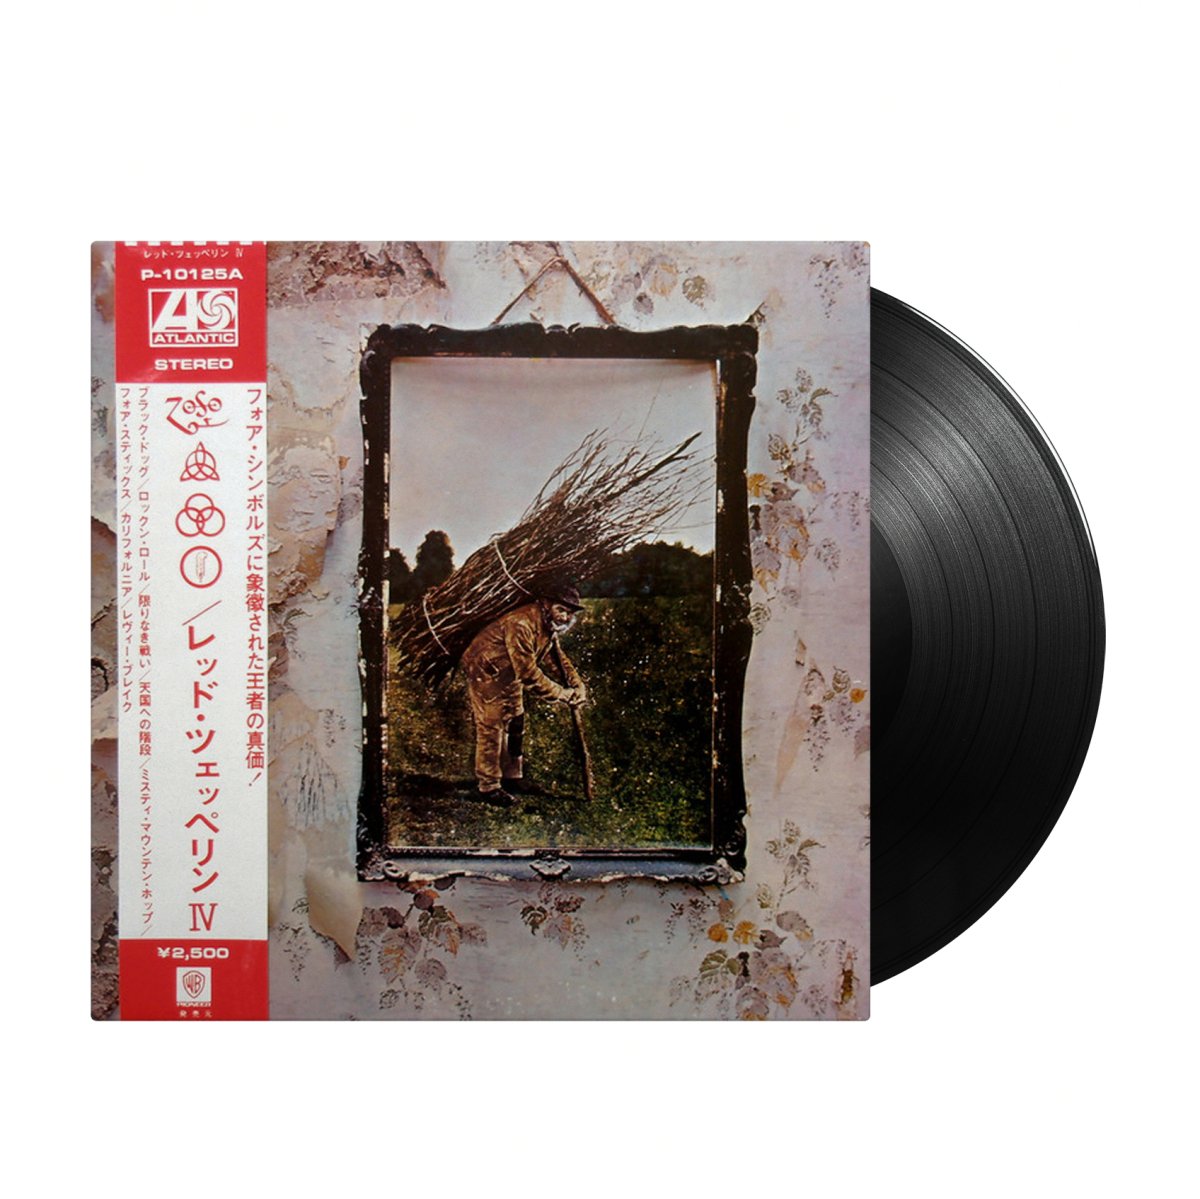 Led Zeppelin - IV (Japan Import) - Inner Ocean Records